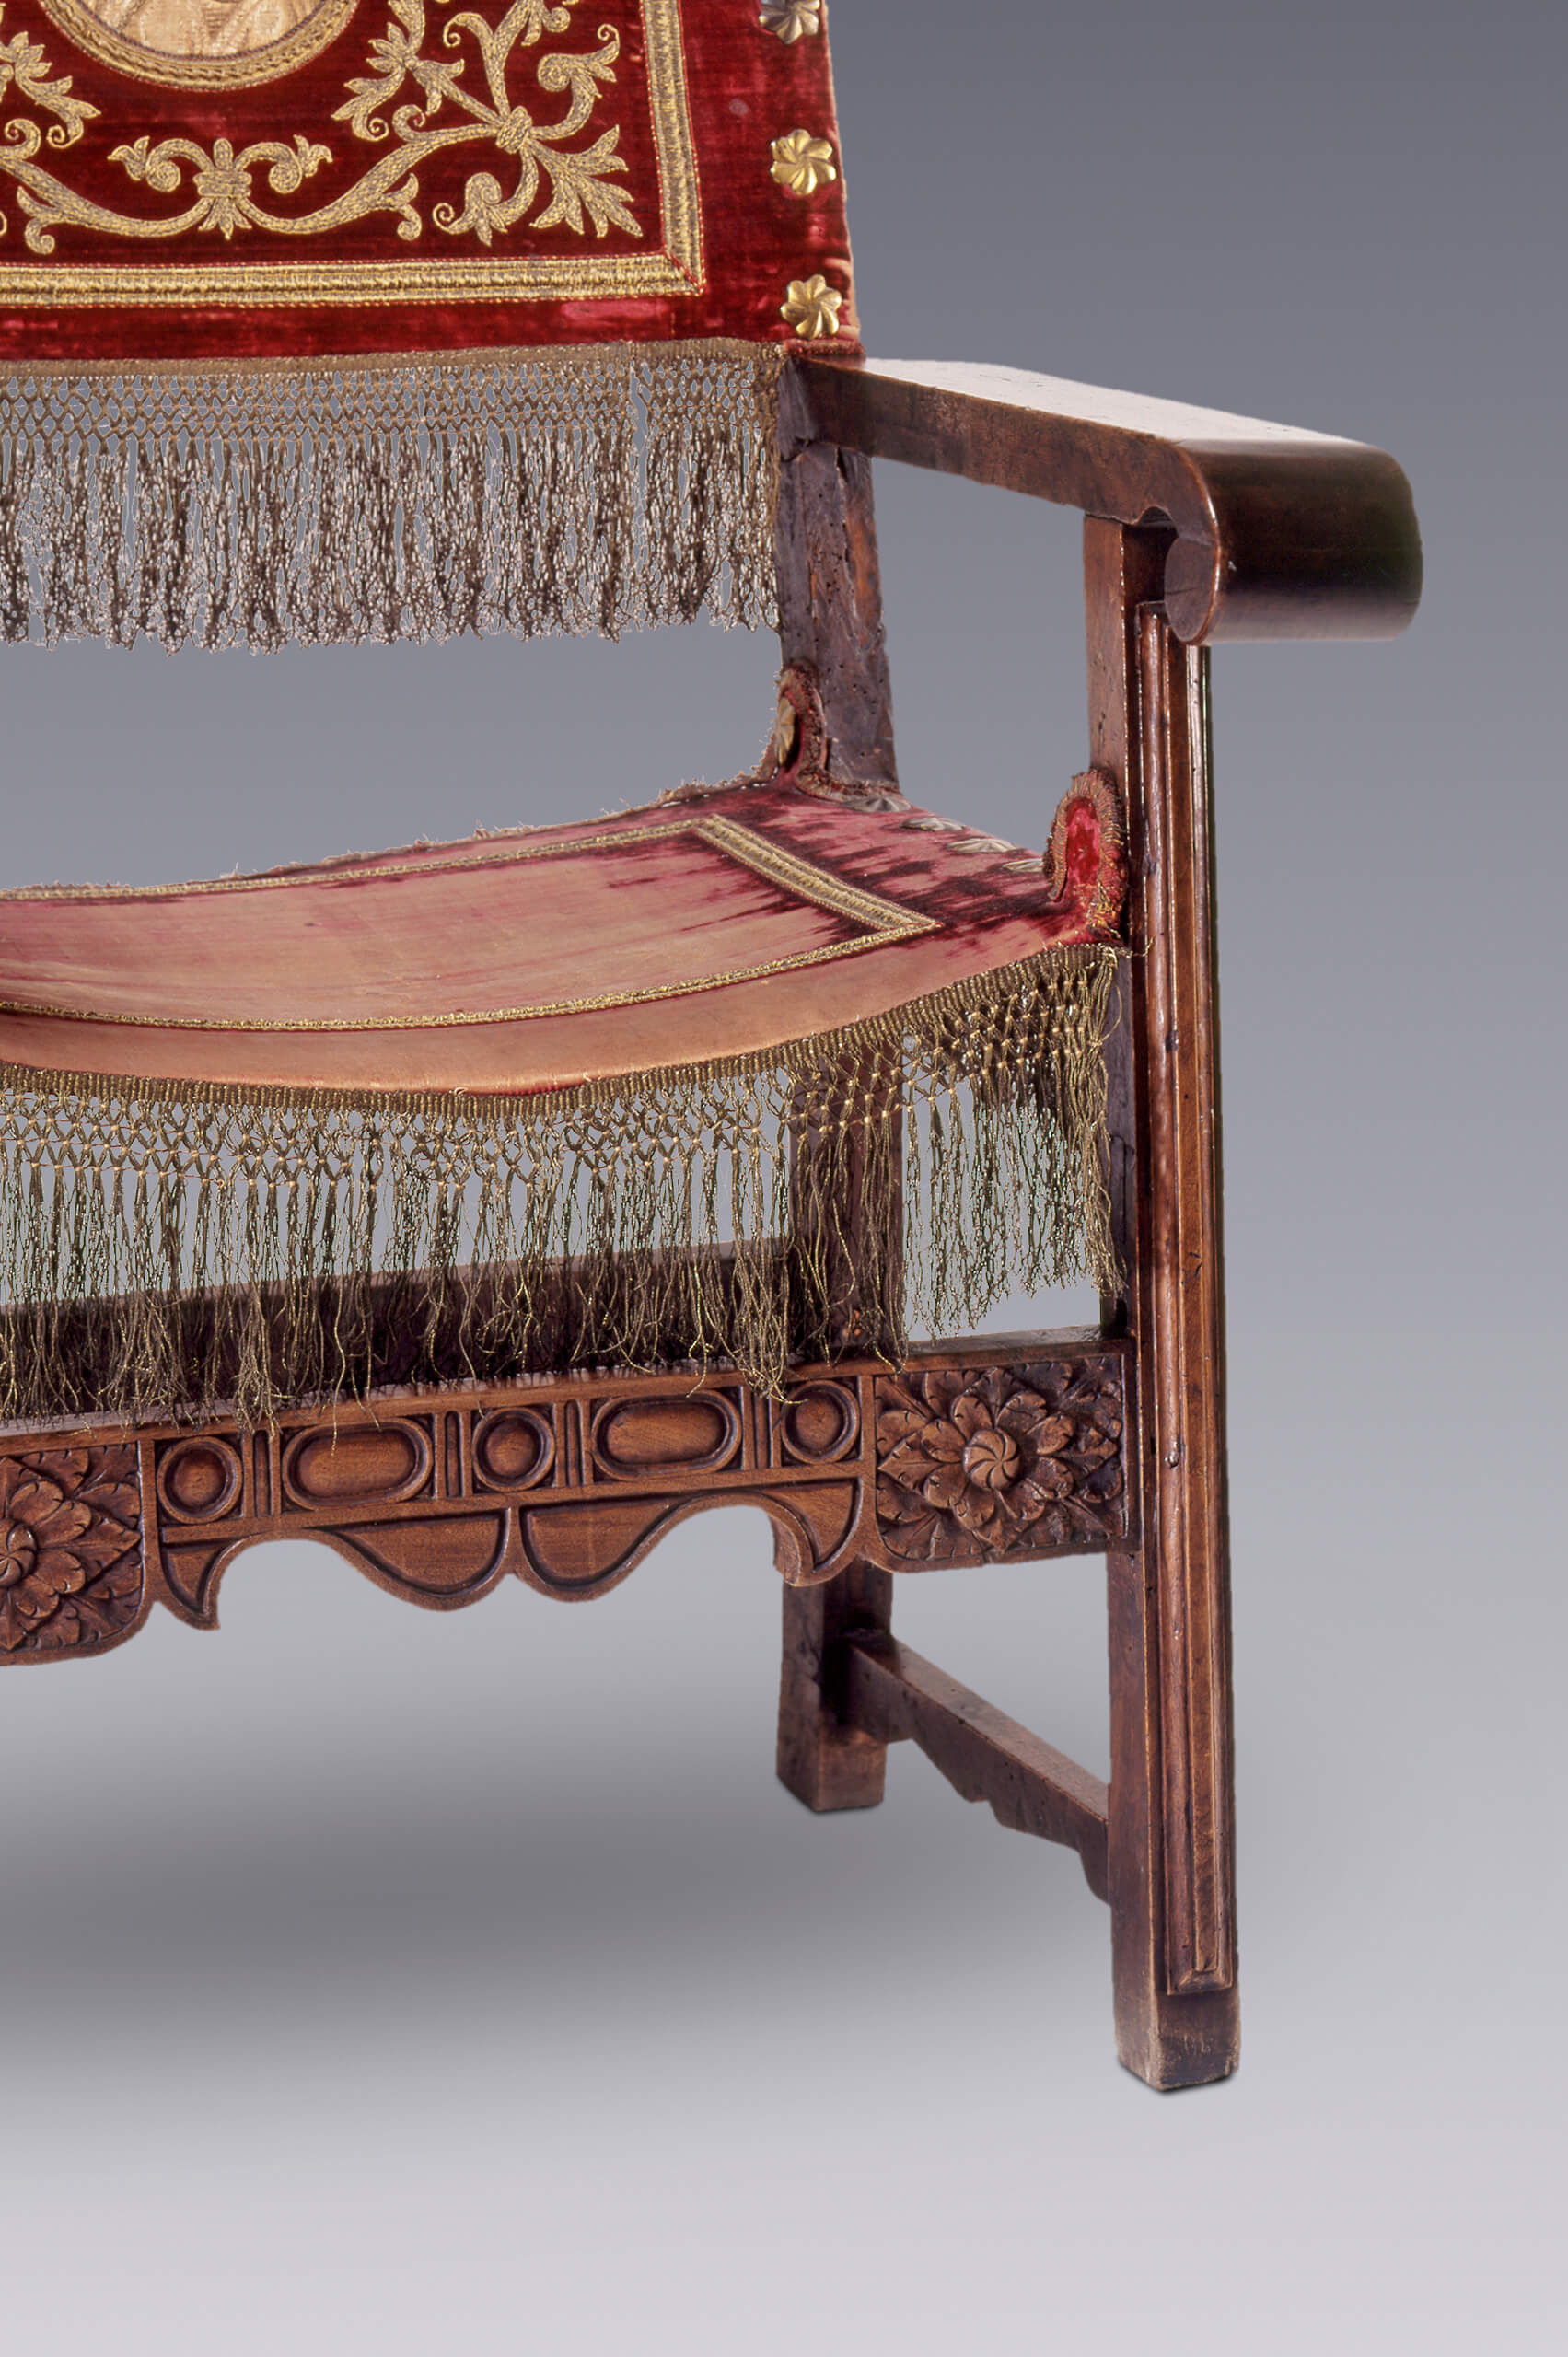 Sillas de brazos (con partes y textiles antiguos) | Salas de Arte Virreinal y Siglo XIX | Museo Amparo, Puebla